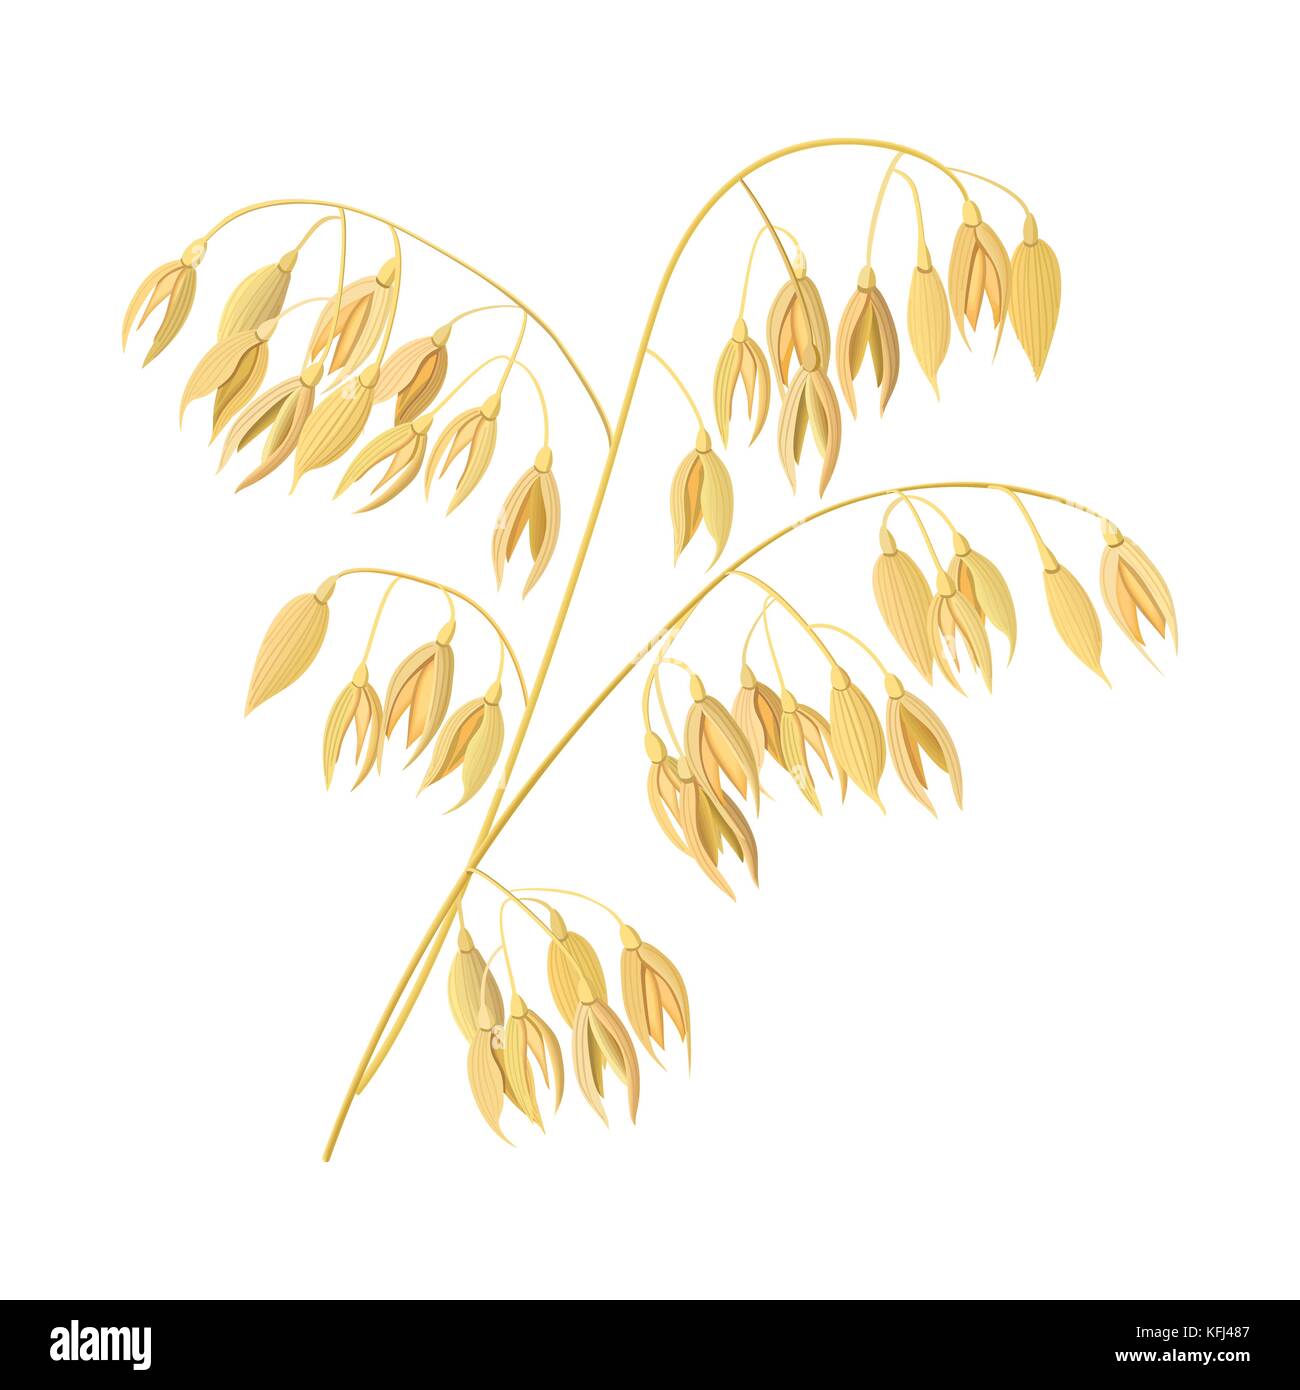 Weizenähren, Gerste. Müsli 3d Symbol Vektor. Körner und Ohren. erntezeit Samen und Pflanzen Stock Vektor